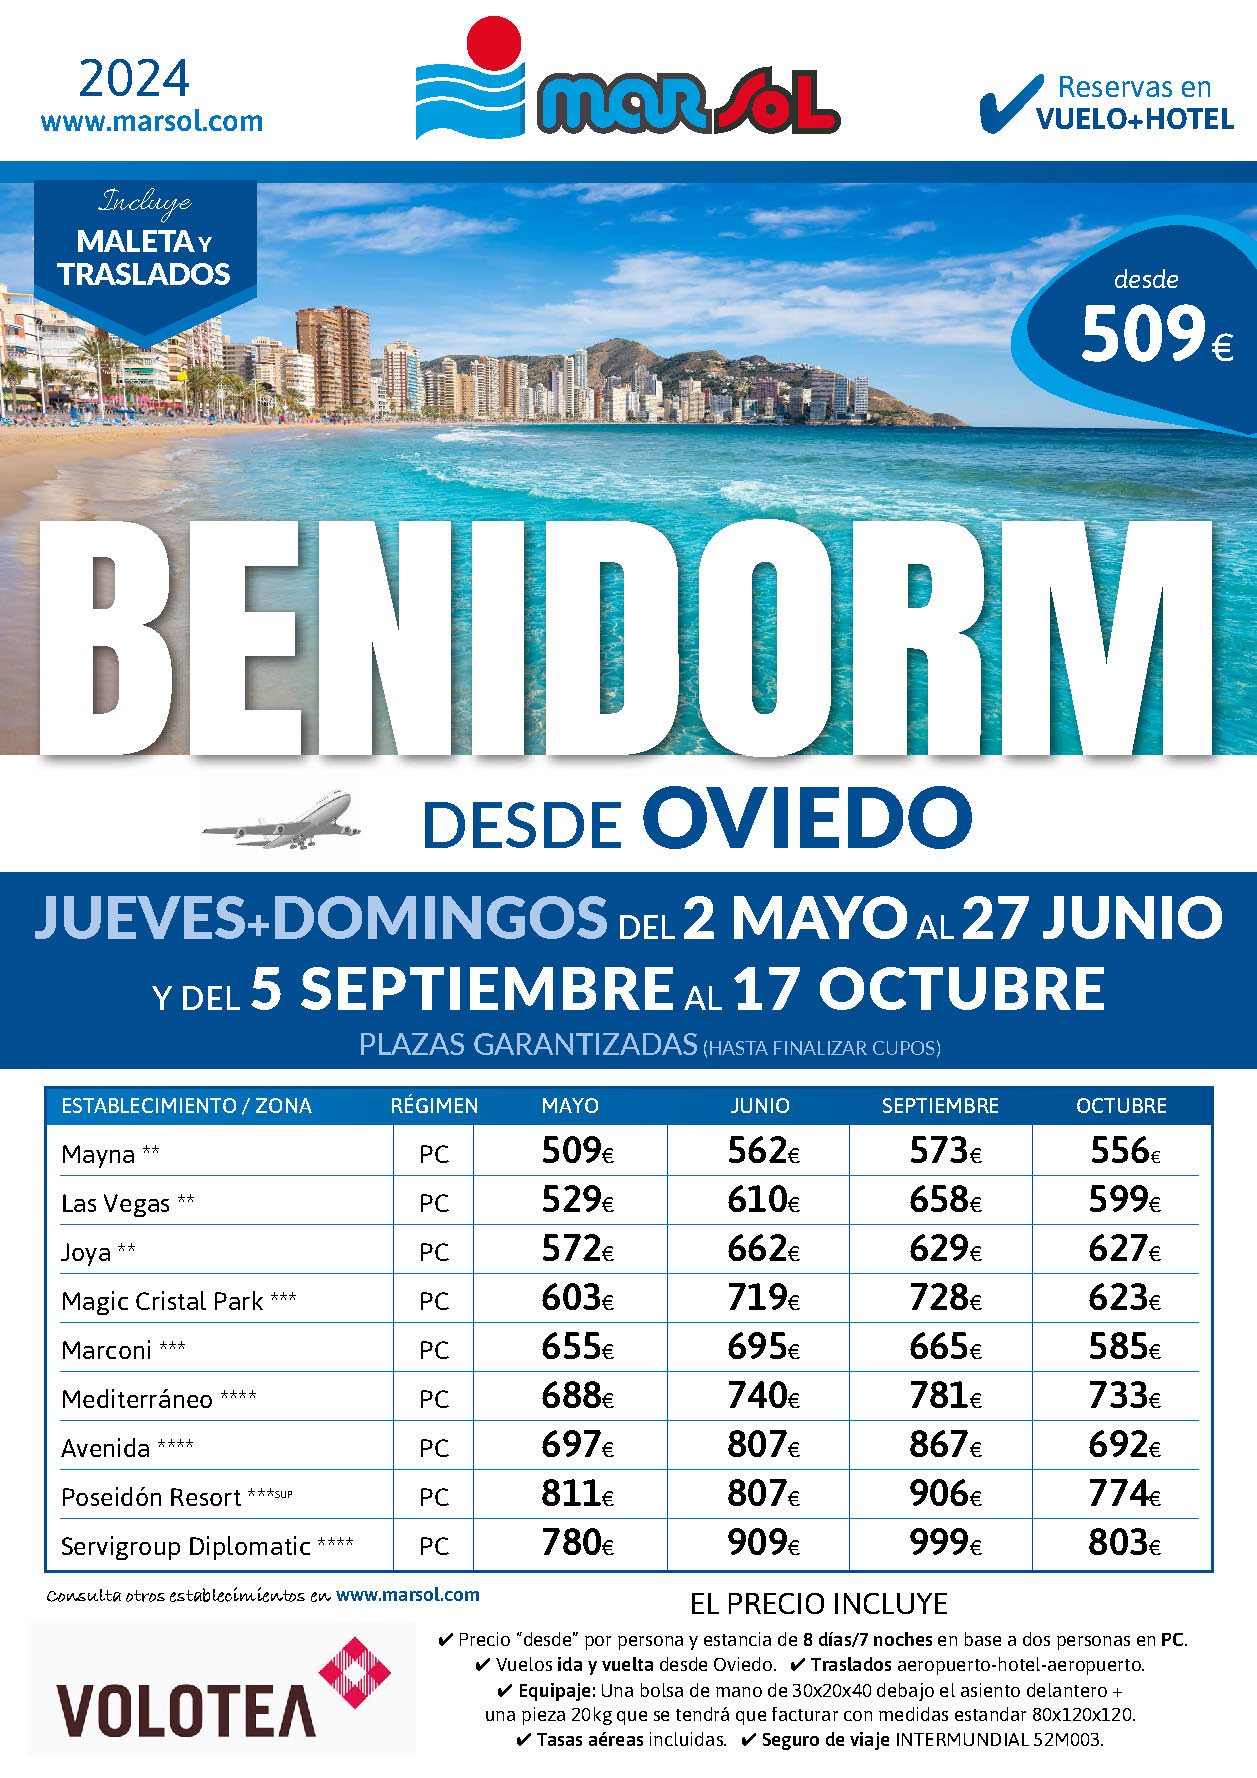 Oferta Marsol Estancia en Benidorm Vuelo Hotel PC Traslados salidas Mayo Junio Septiembre Octubre 2024 vuelo directo desde Oviedo